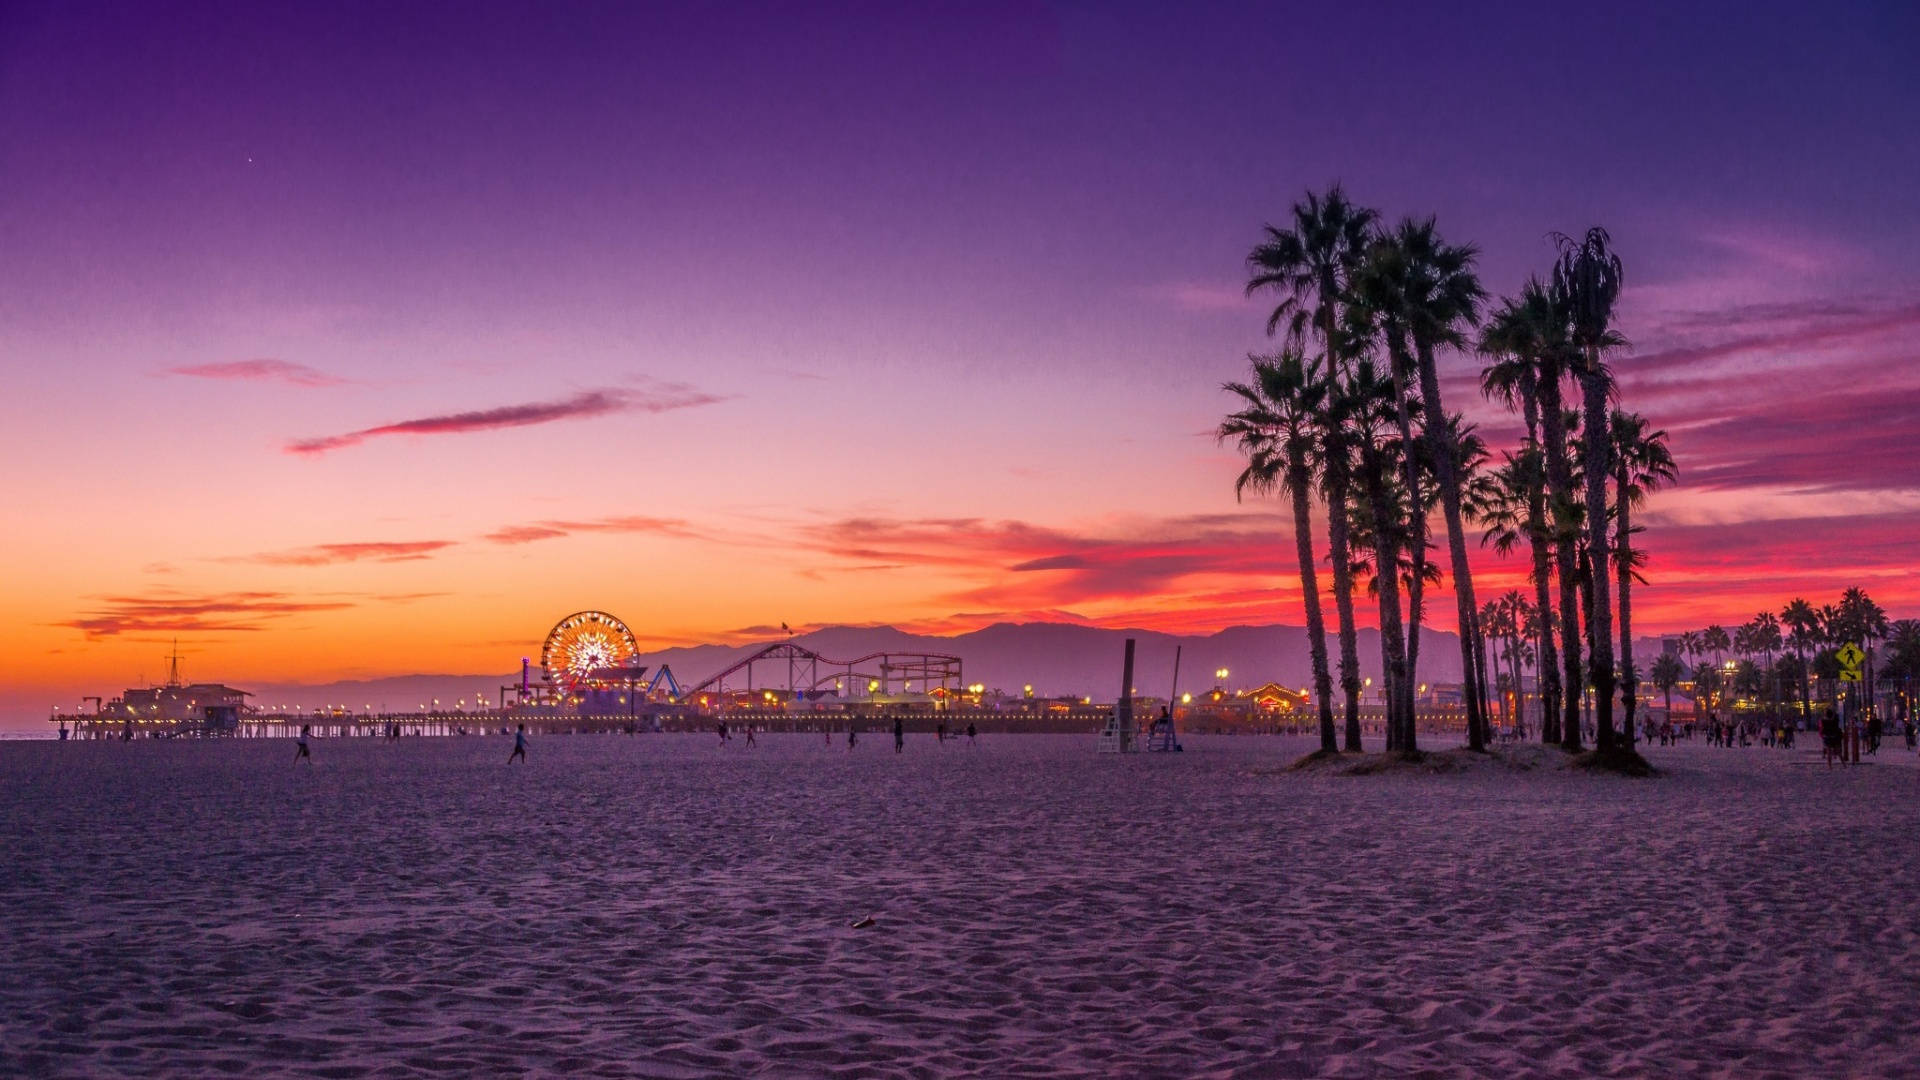 Sonnenuntergangam Strand von Santa Monica, Kalifornien.